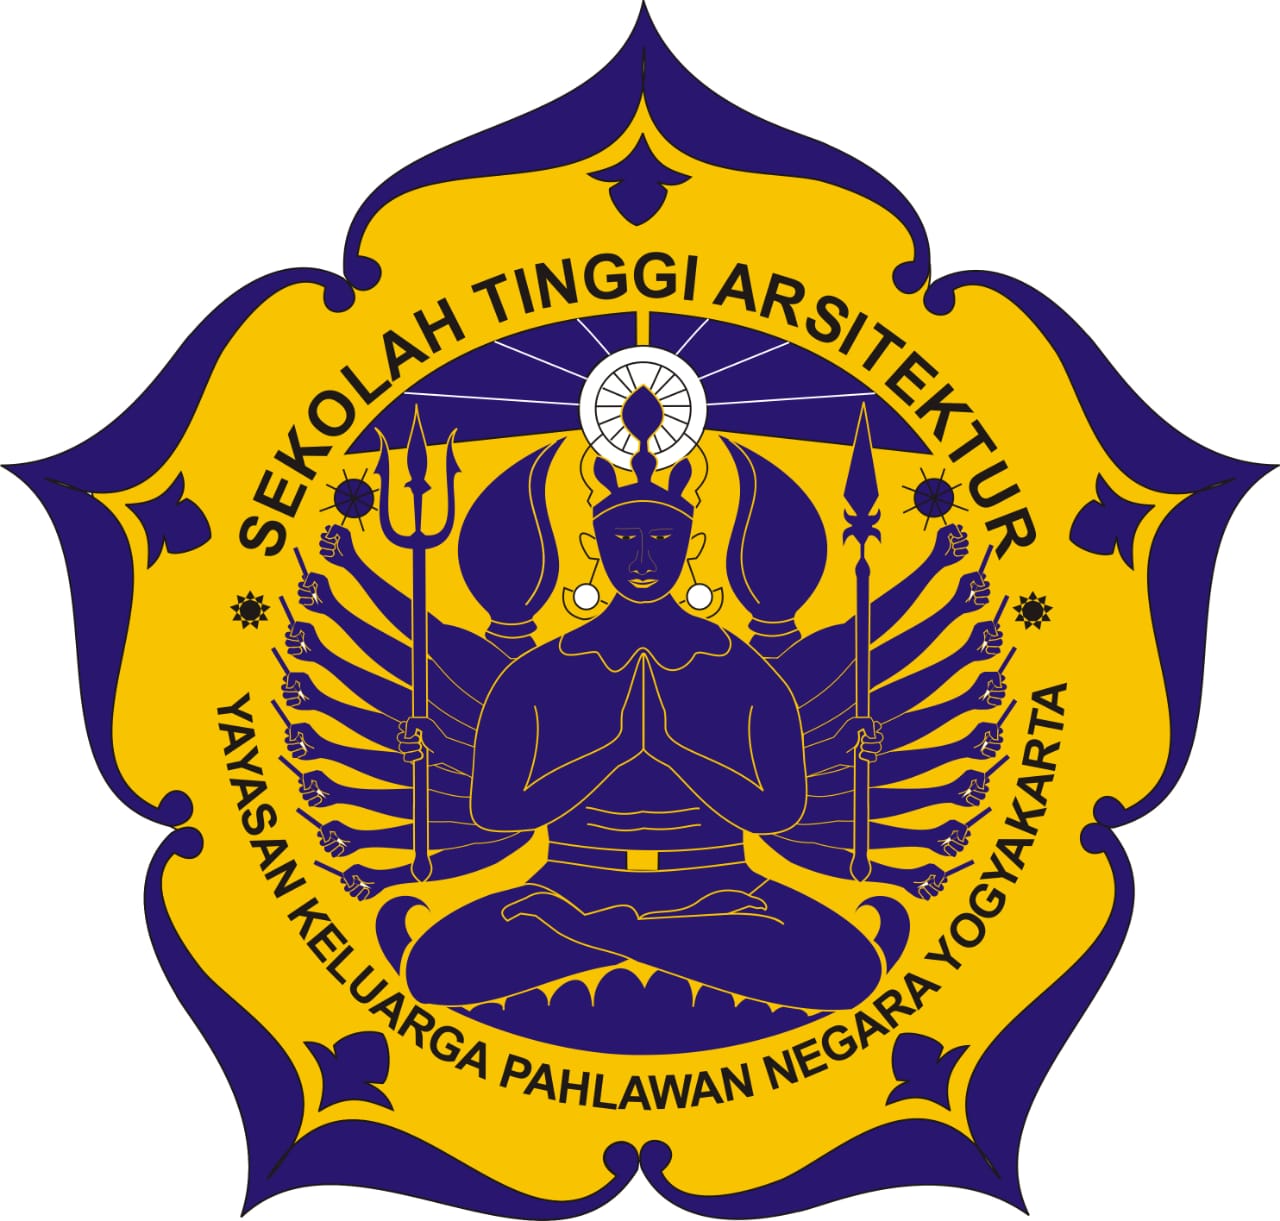 logo Sekolah Tinggi Arsitektur YKPN Yogyakarta